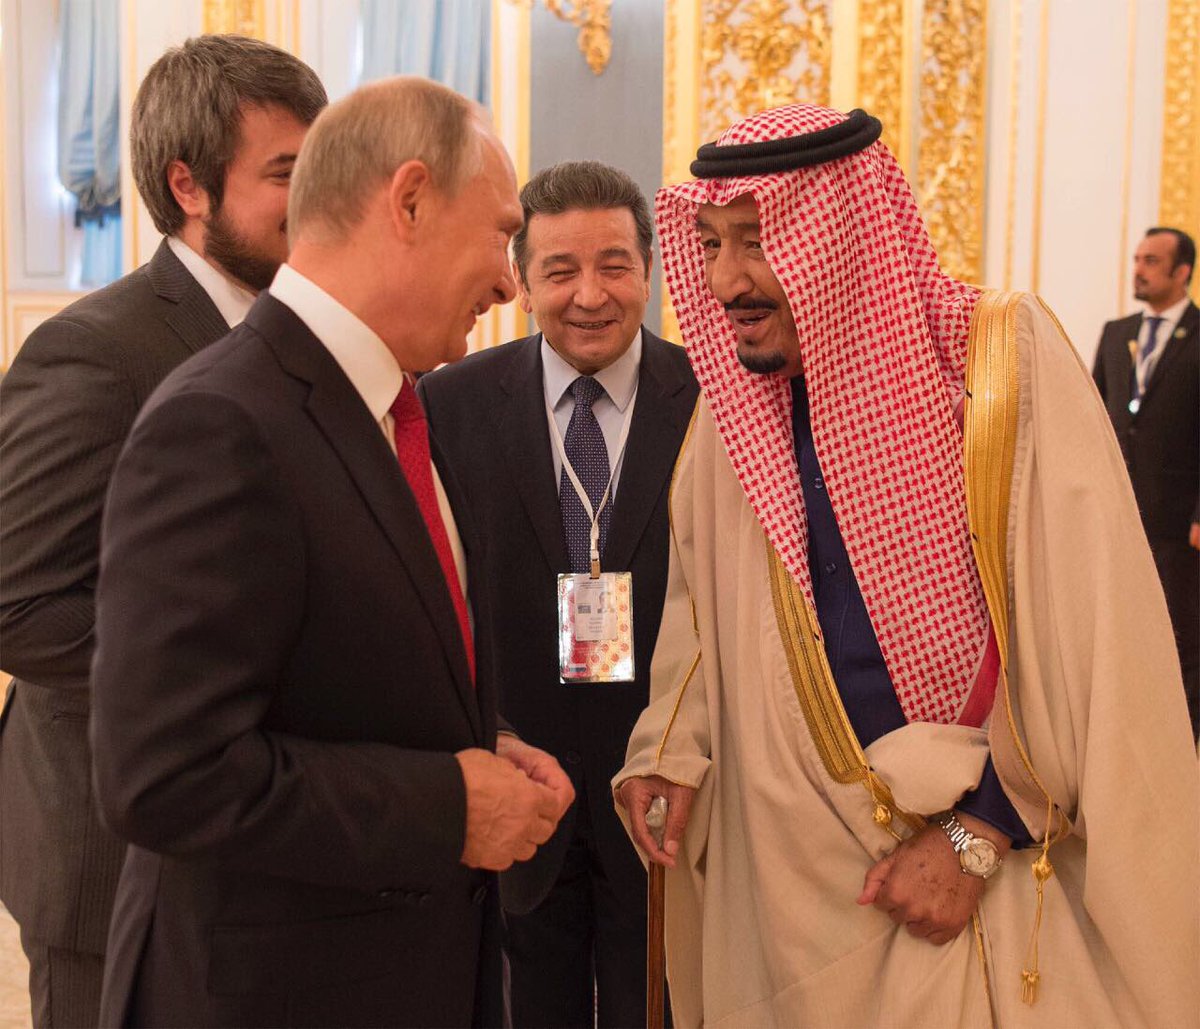 معالم على طريق العلاقات السعودية الروسية: مكافحة الإرهاب وتسوية أزمات المنطقة والتعاون الاقتصادي العسكري